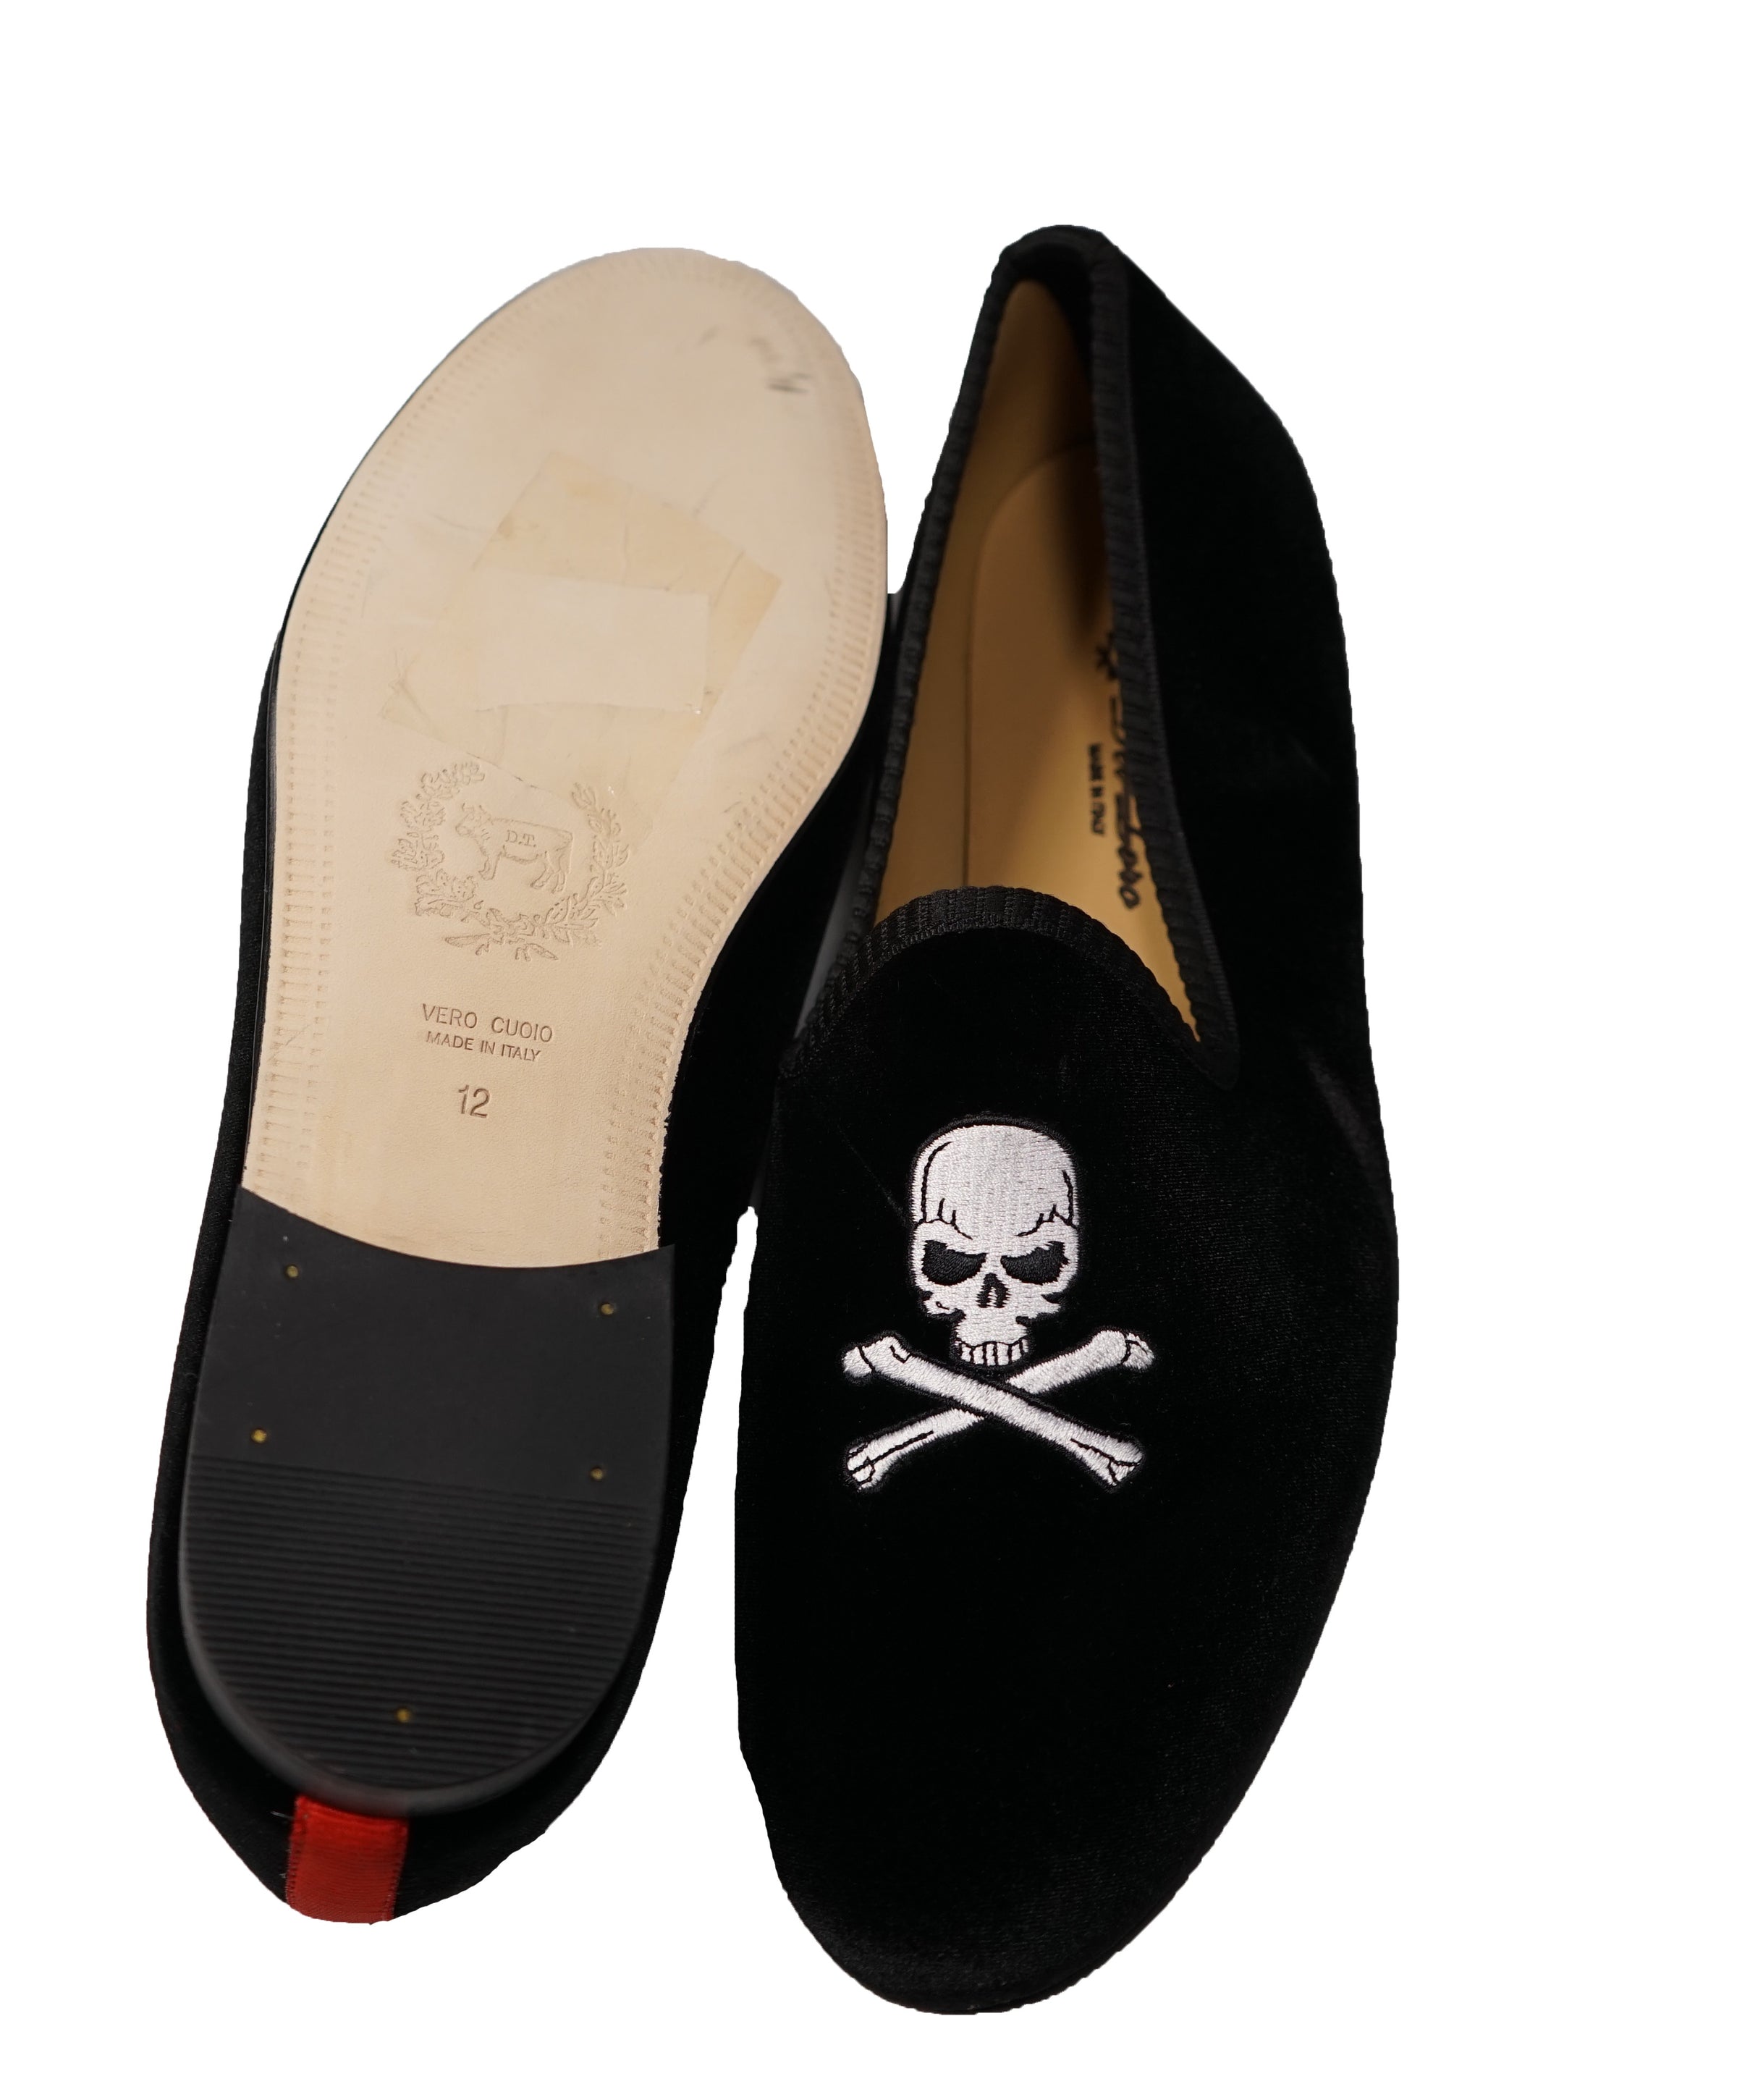 Fiore Palm Beach Skull Moccasins Black Velvet Slippers Made in